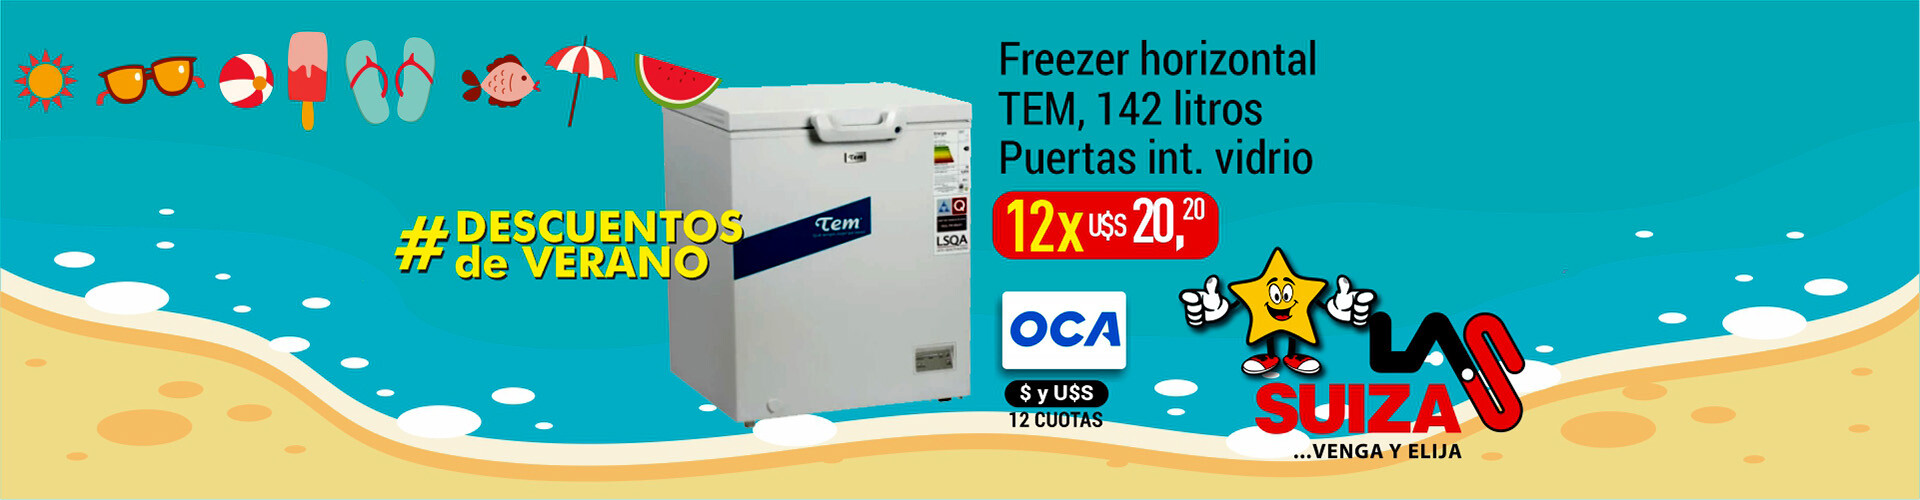 Freezer 142 lts Tem